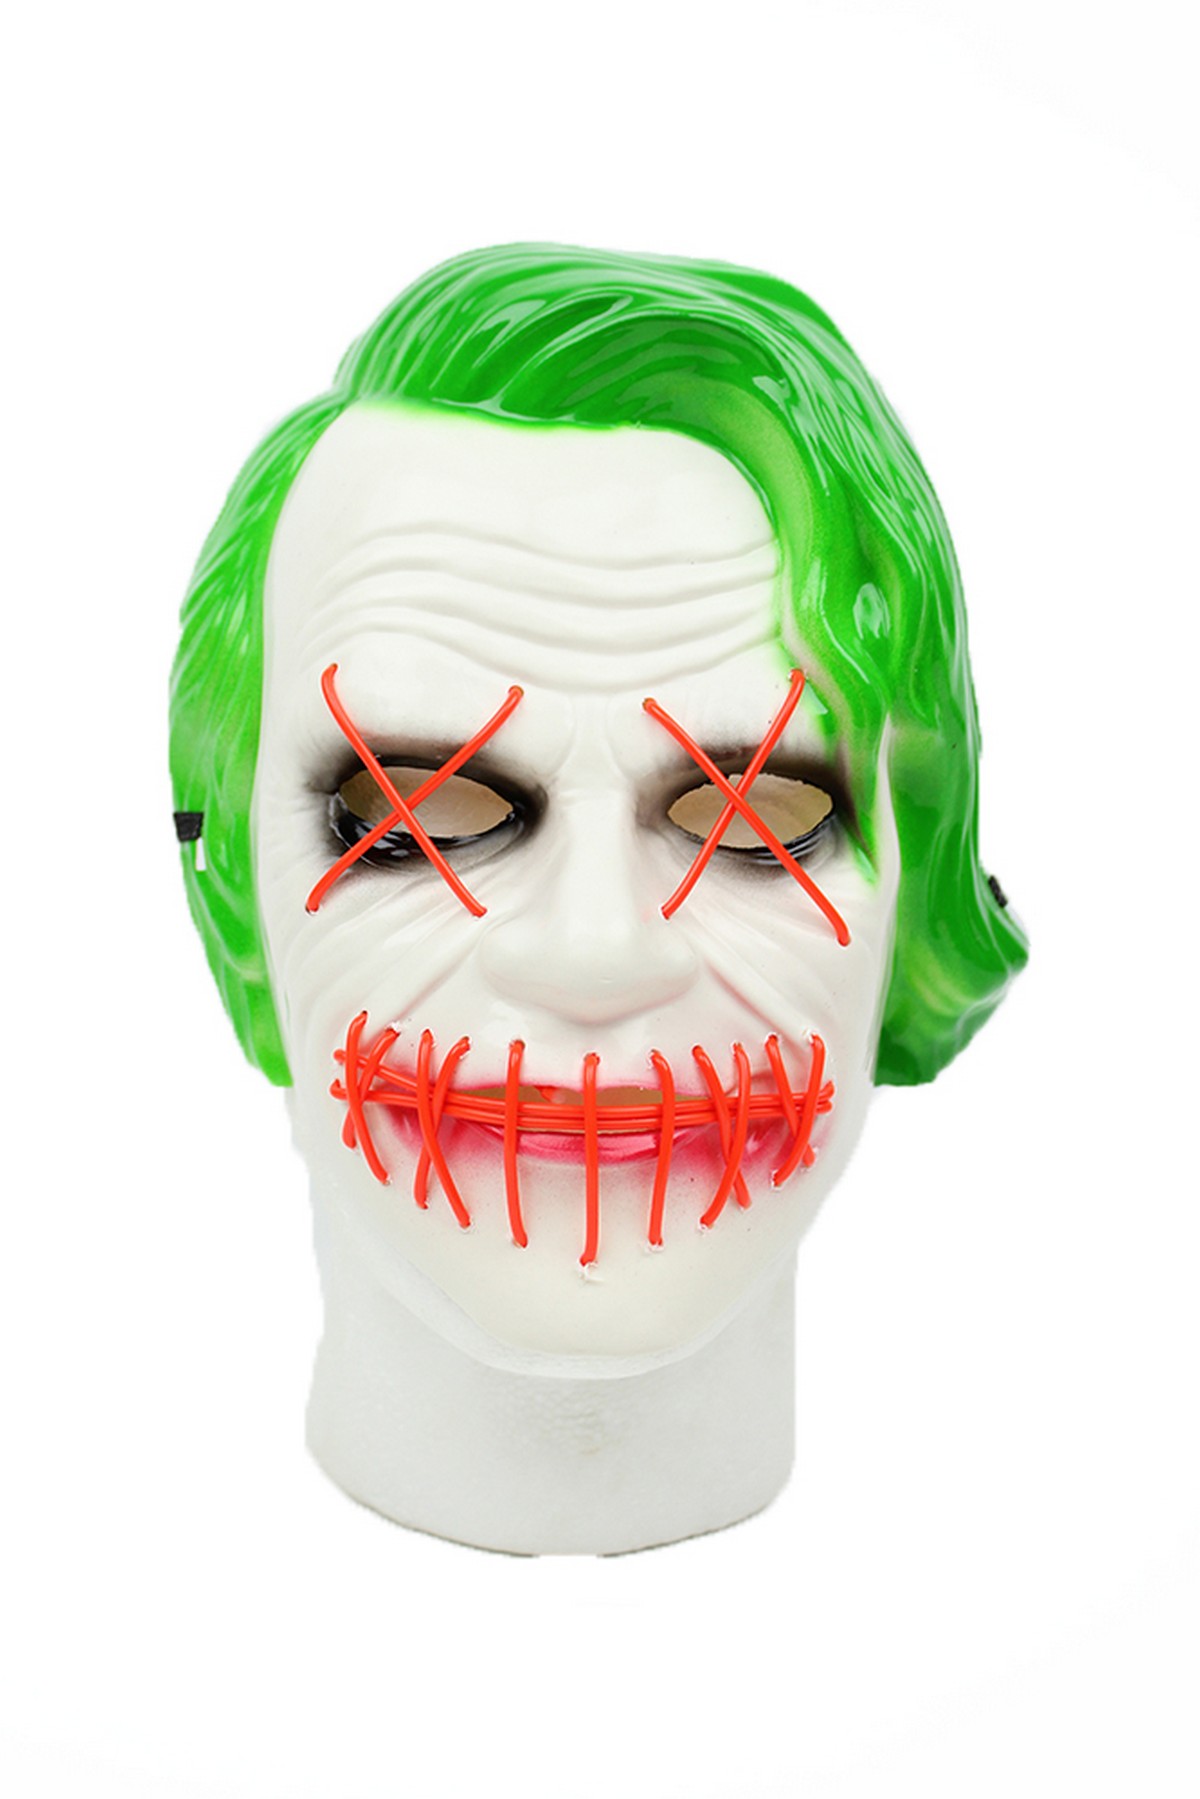 Plastik Batman Joker Maskesi Cadilar Bayrami Dolu Dolu Parti Malzemeleri Dogum Gunu Malzemeleri Parti Malzemeleri Parti Susleri Dogum Gunu Susleri Parti Urunleri Kostum Cesitlerinin Toptan Ve Perakende Satisinin Gerceklestigi Online E Ticaret Sitesi